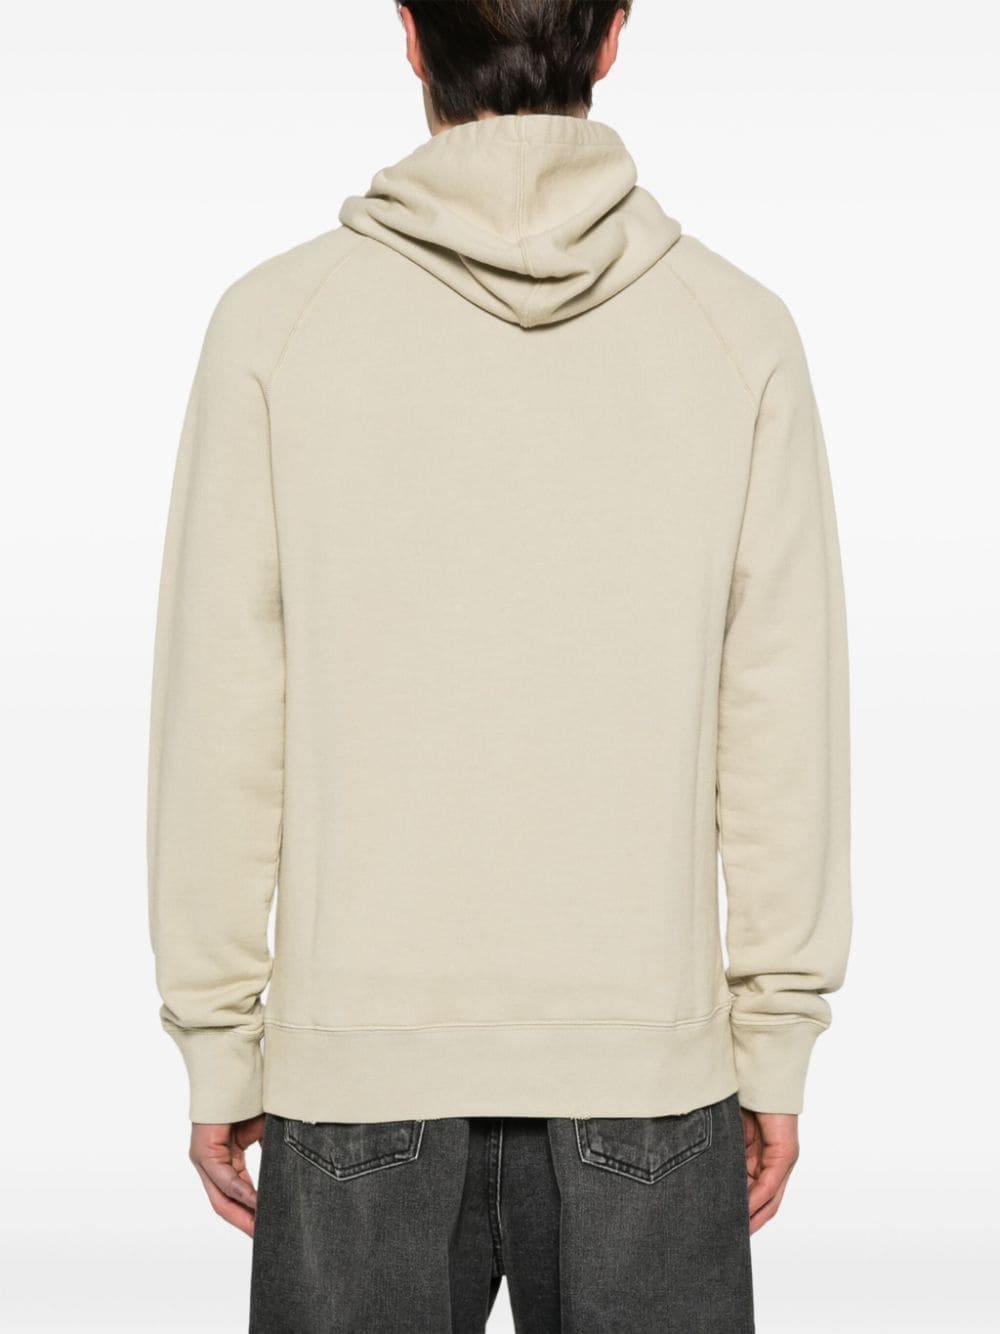 number-print cotton hoodie - 4